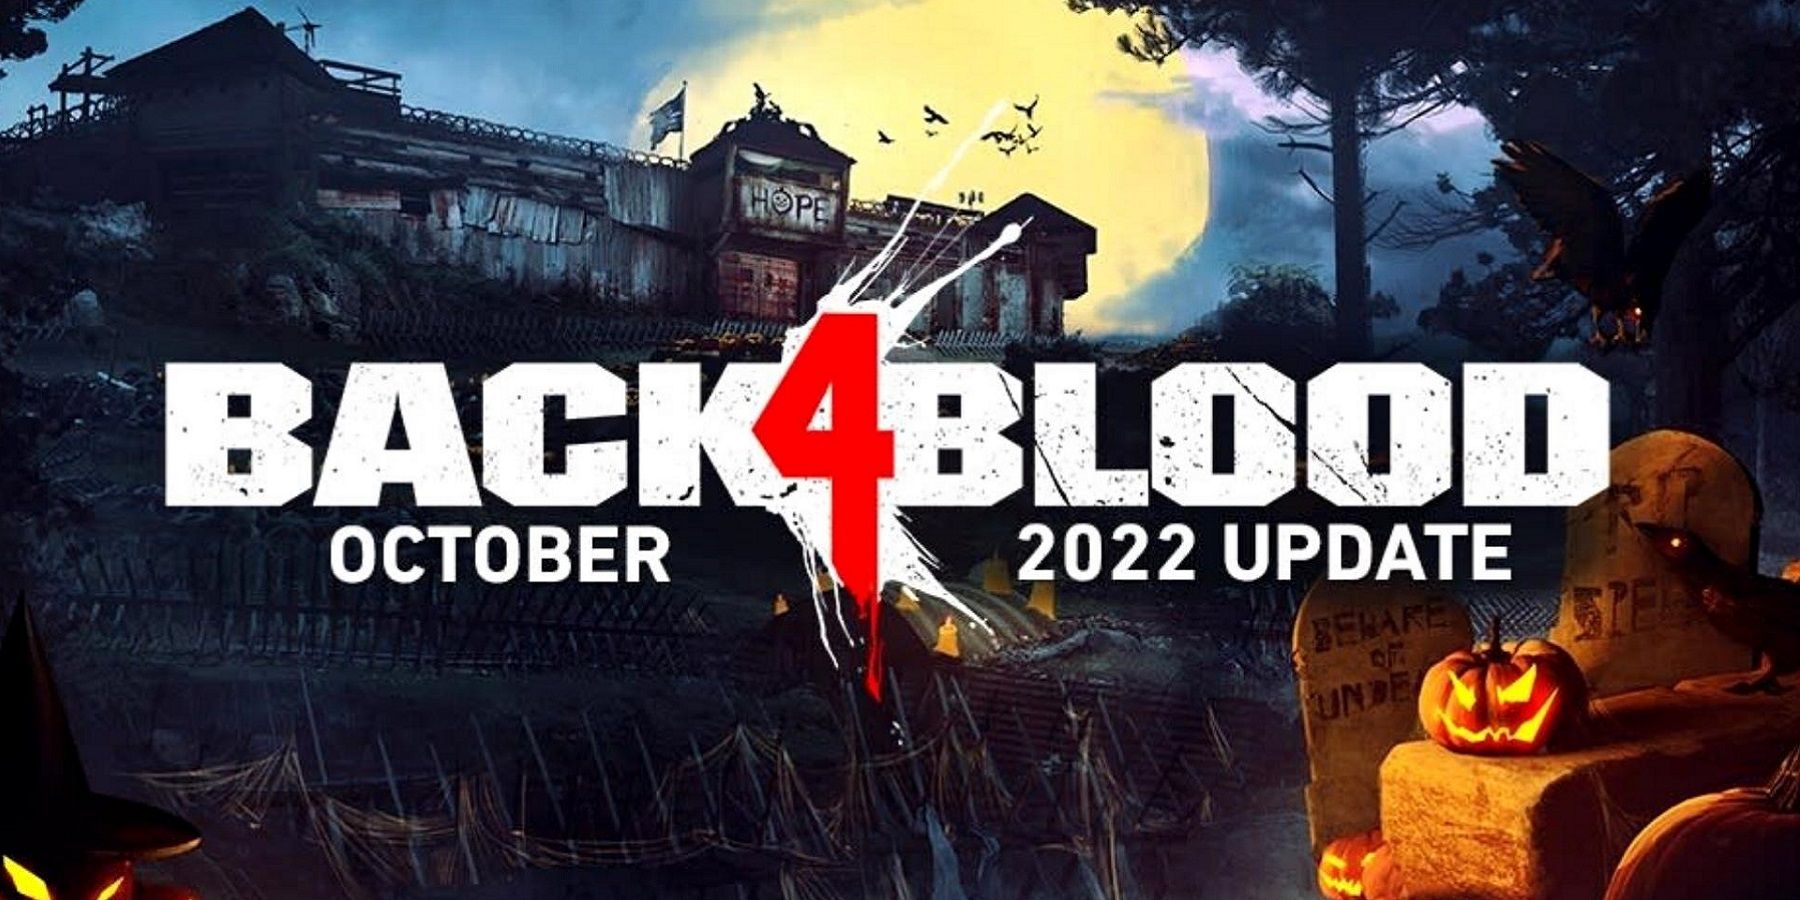 Изображение из Back 4 Blood, рекламирующее обновление к Хэллоуину 2022 года, с жуткой базой на заднем плане.